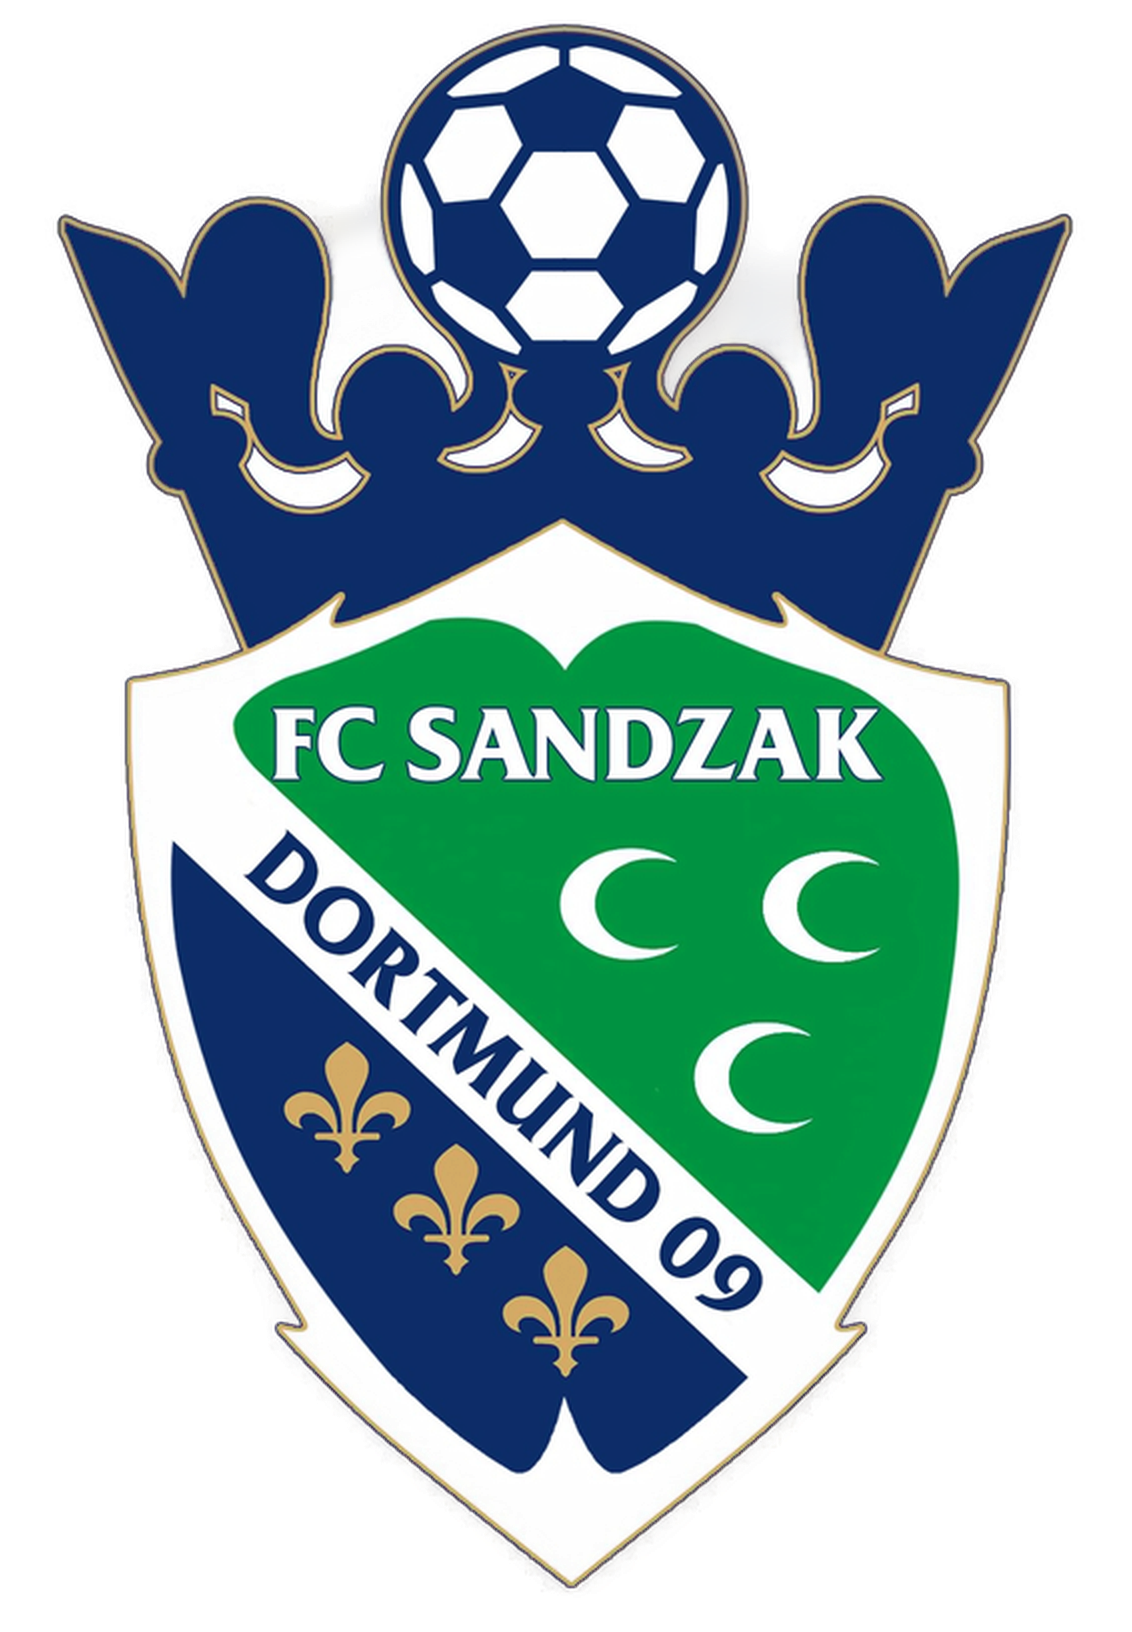 Wappen FC Sandzak Dortmund 2009